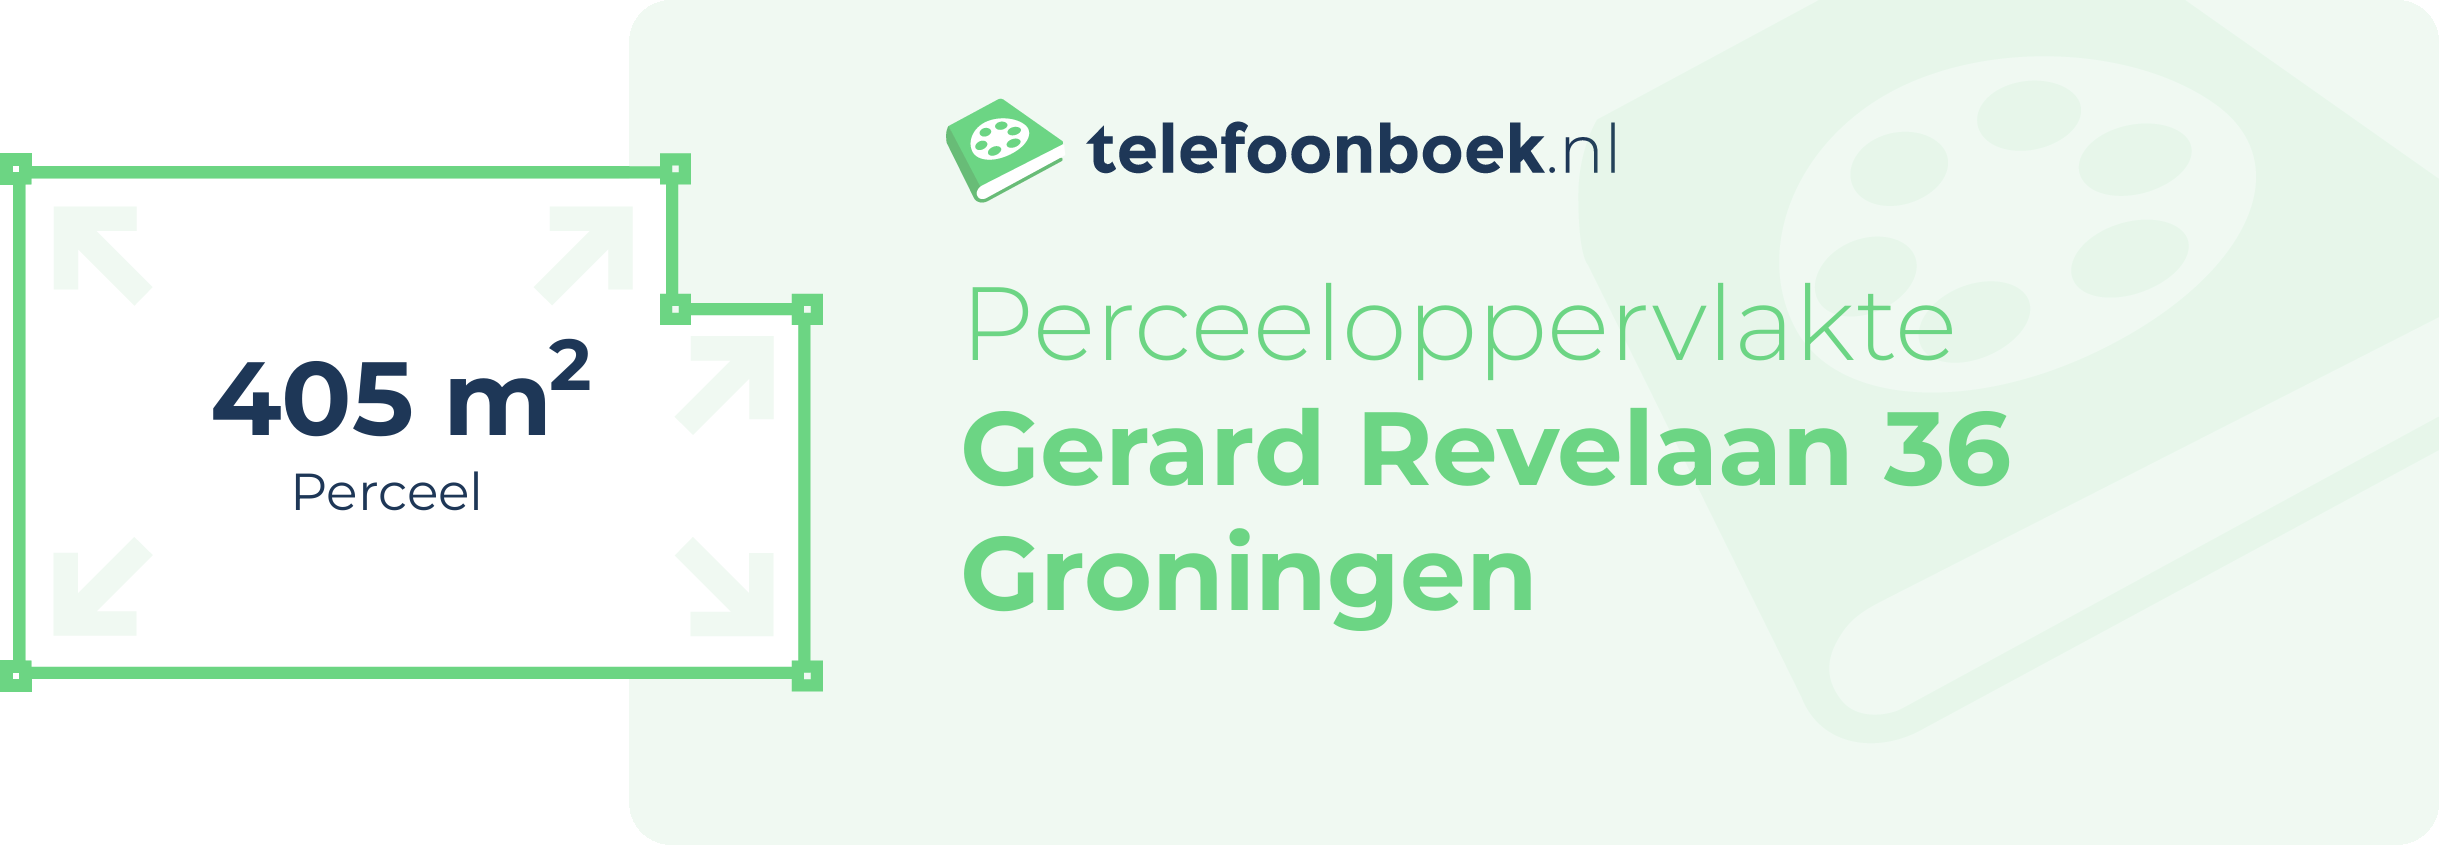 Perceeloppervlakte Gerard Revelaan 36 Groningen